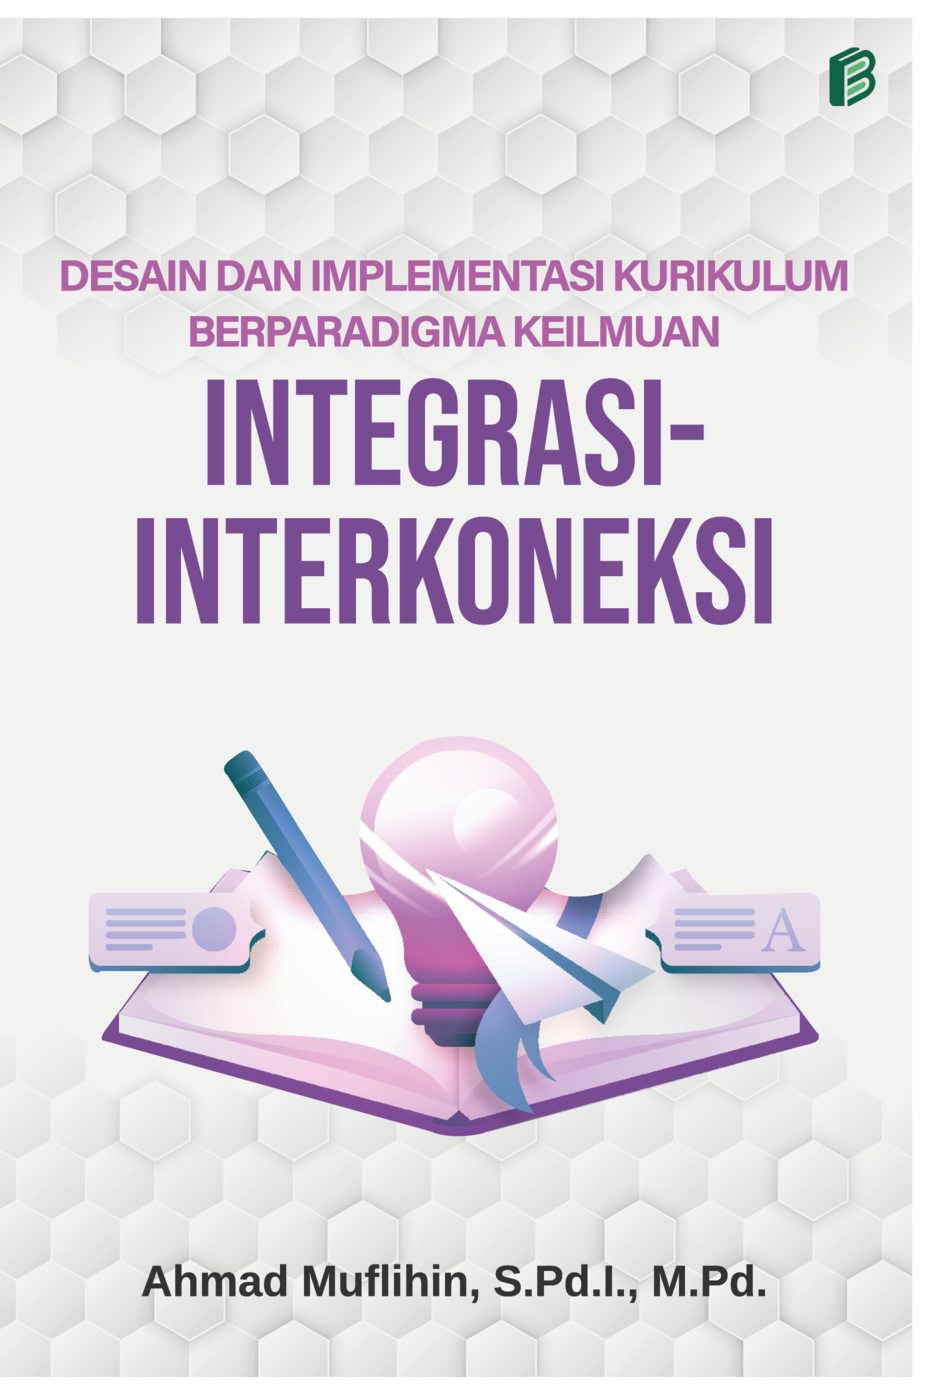 cover/(10-10-2022)desain-dan-implementasi-kurikulum-berparadigma-keilmuan-integrasi-interkoneksi.png